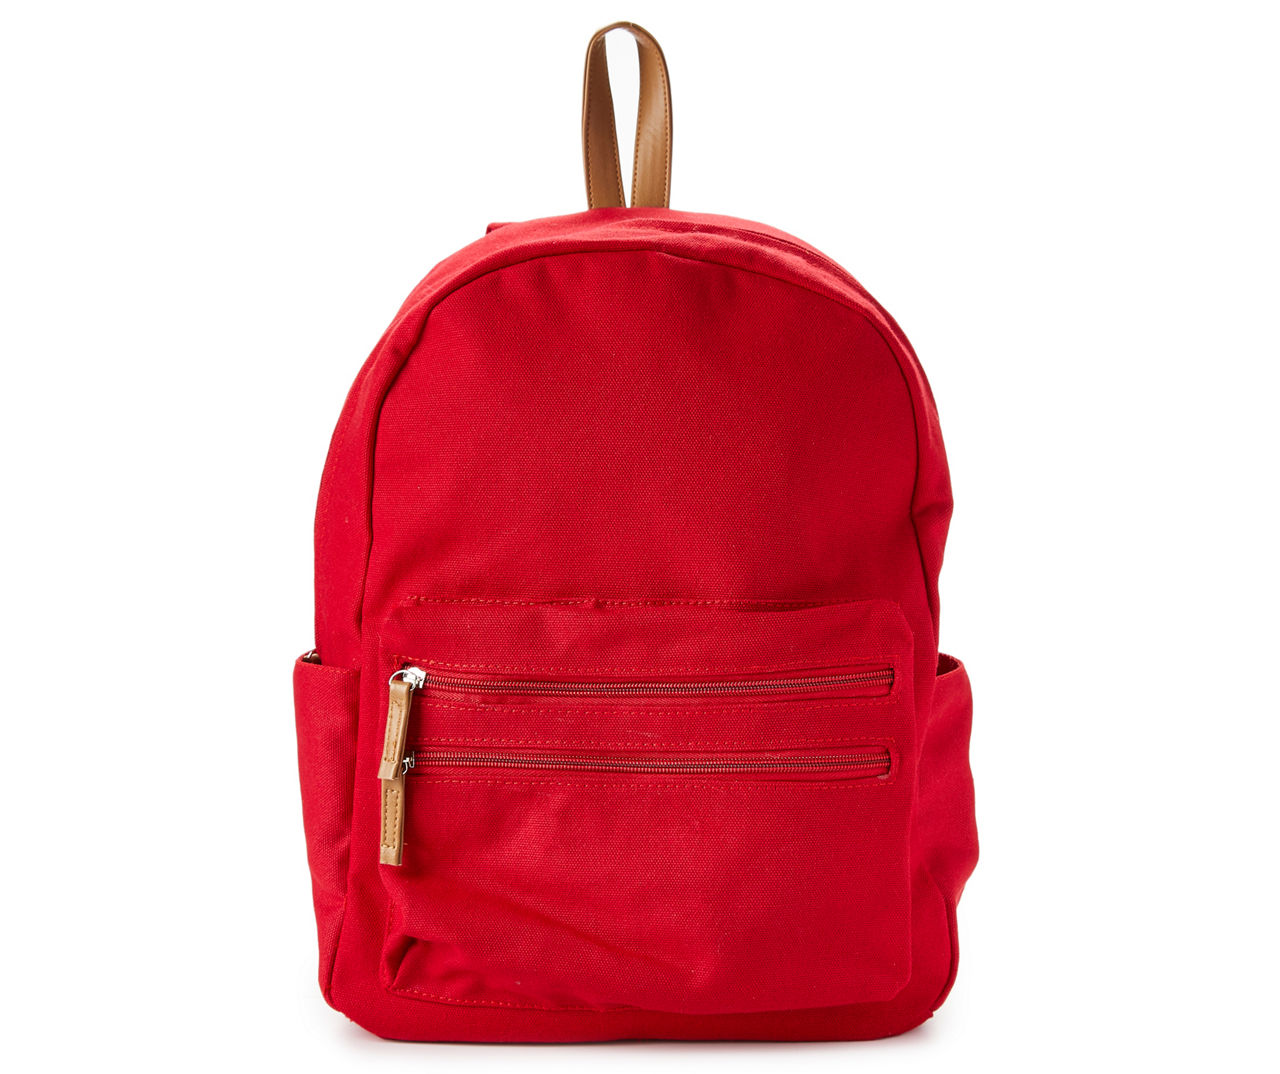 Ass slutpunkt gøre ondt Red Canvas Backpack | Big Lots